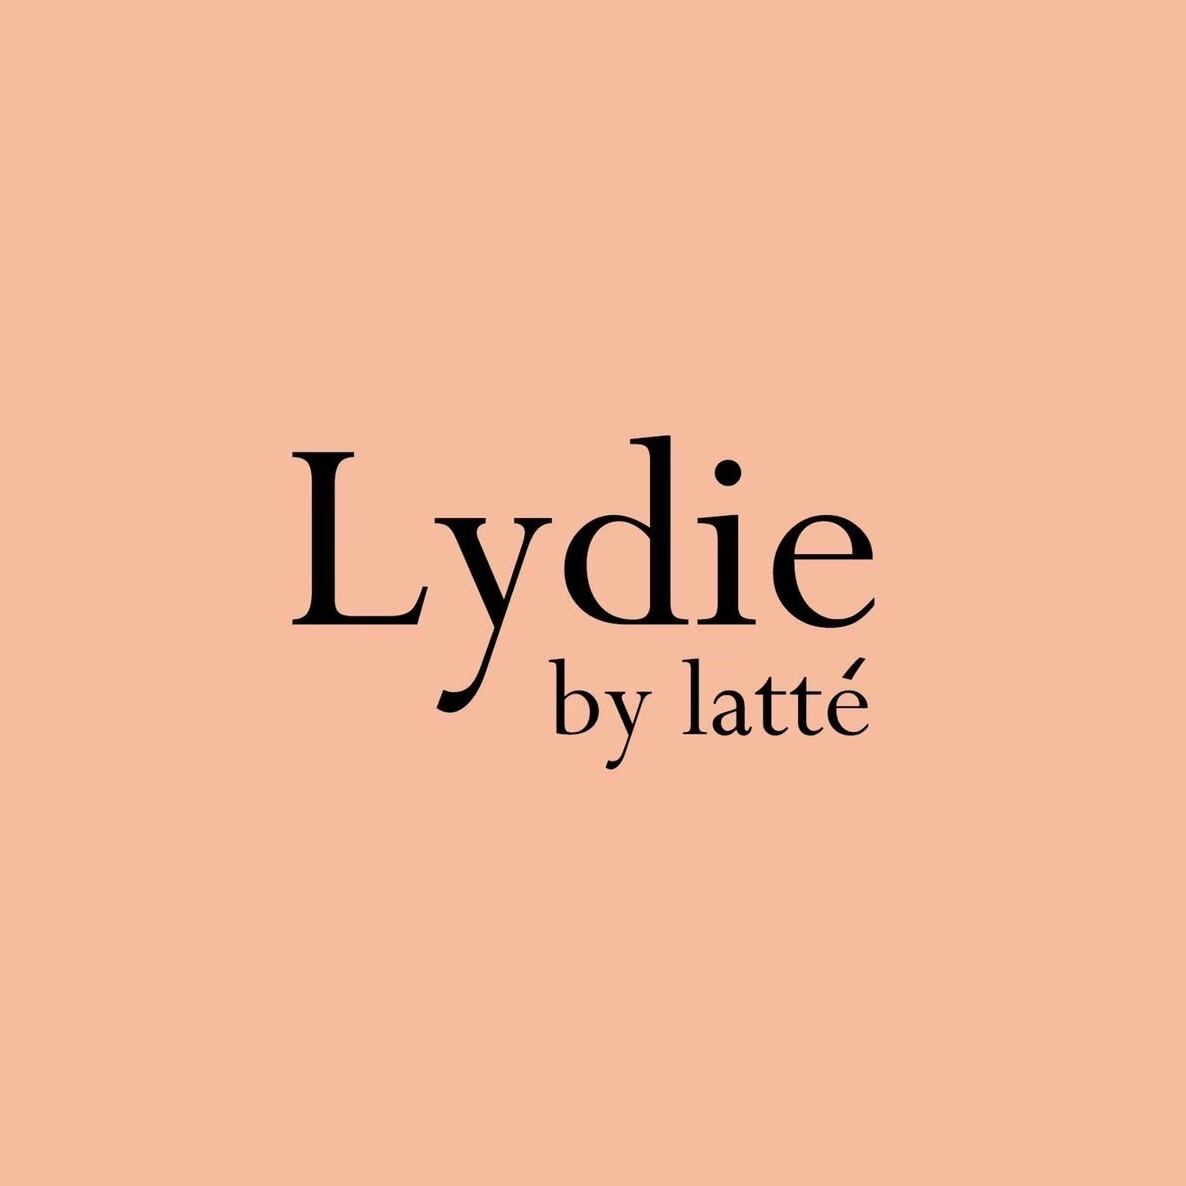 Lydie by latté